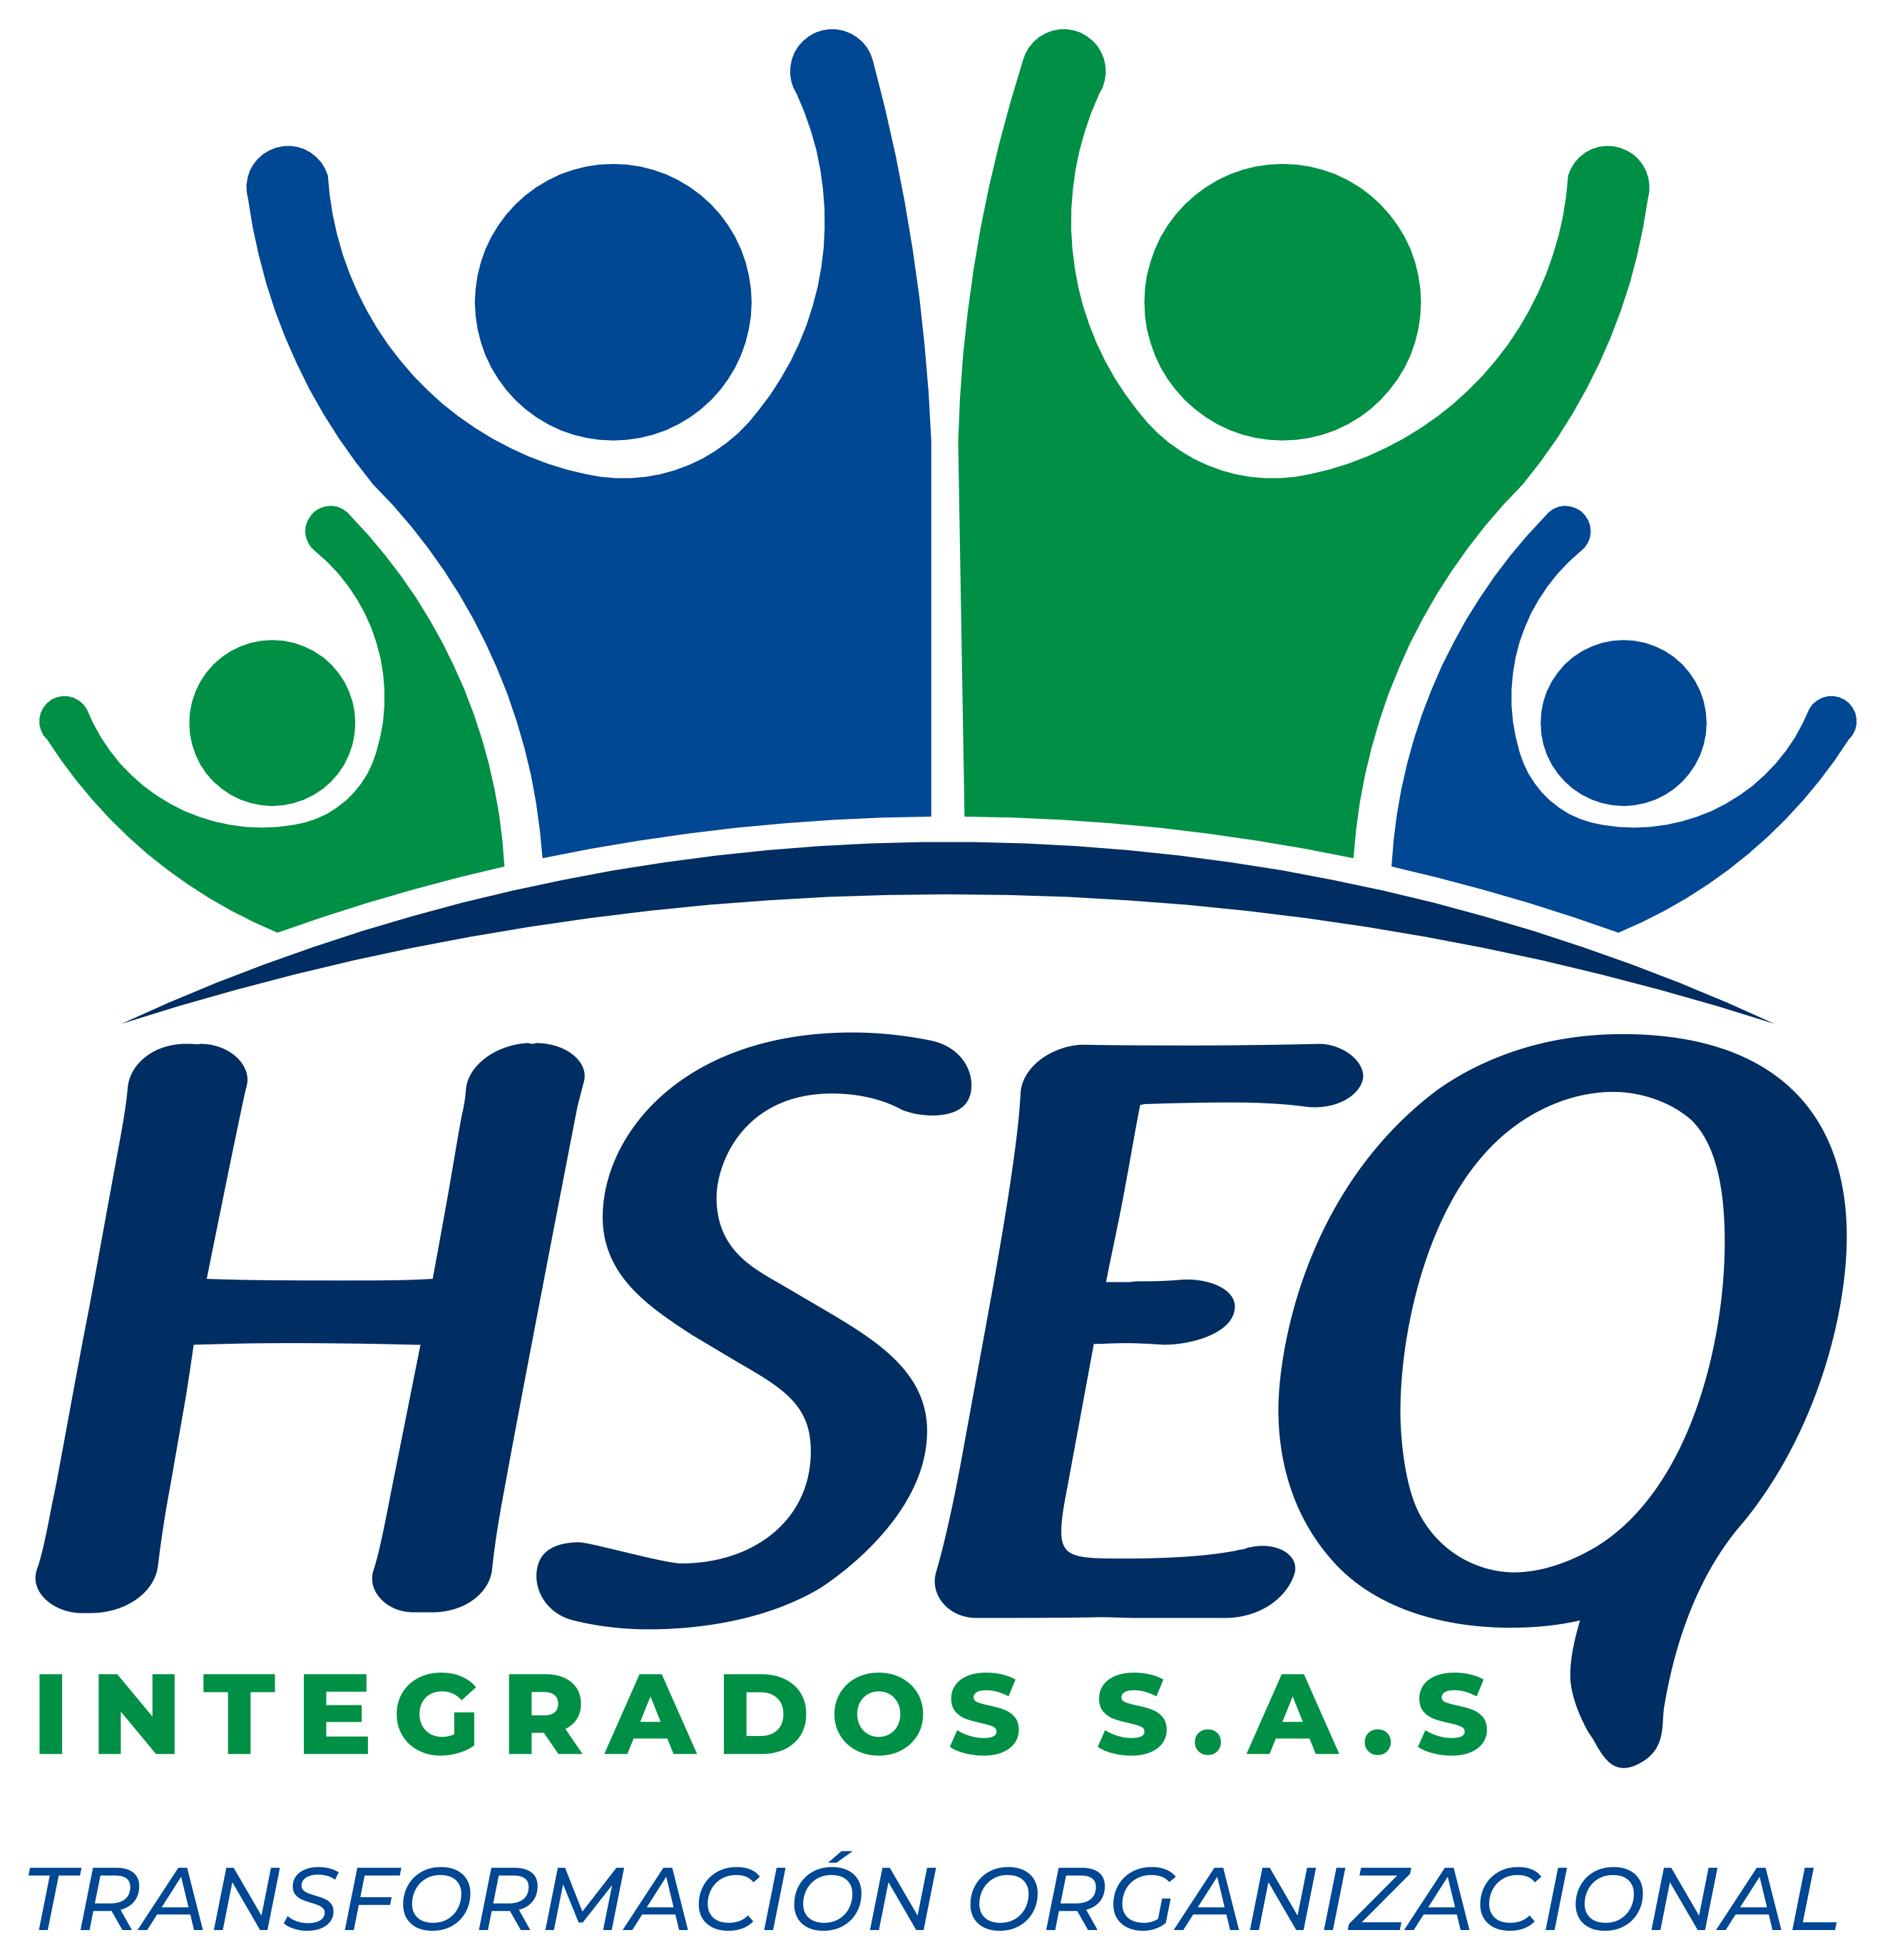 Hseq Integrados SAS